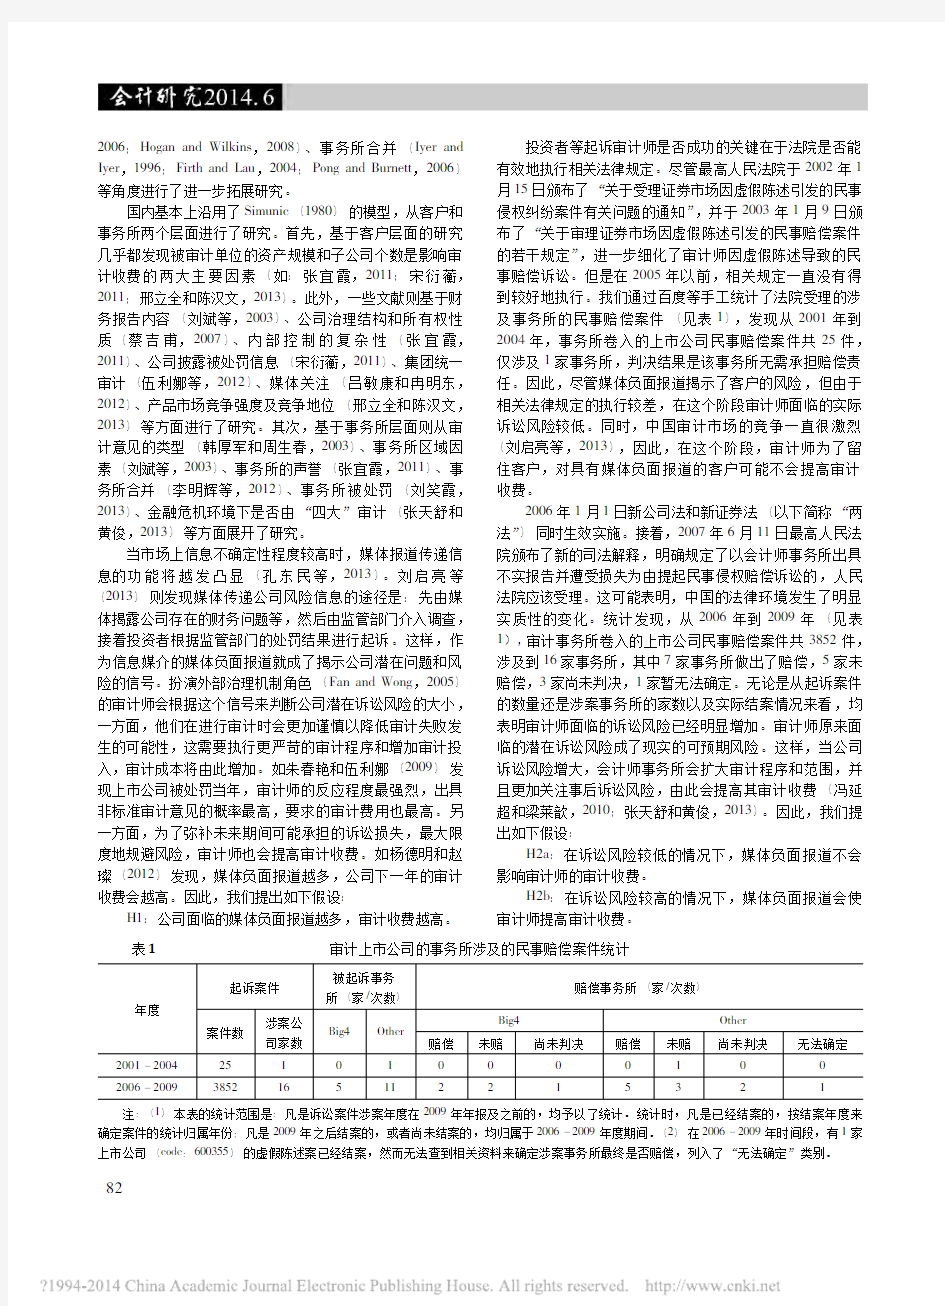 媒体负面报道_诉讼风险与审计费用_刘启亮